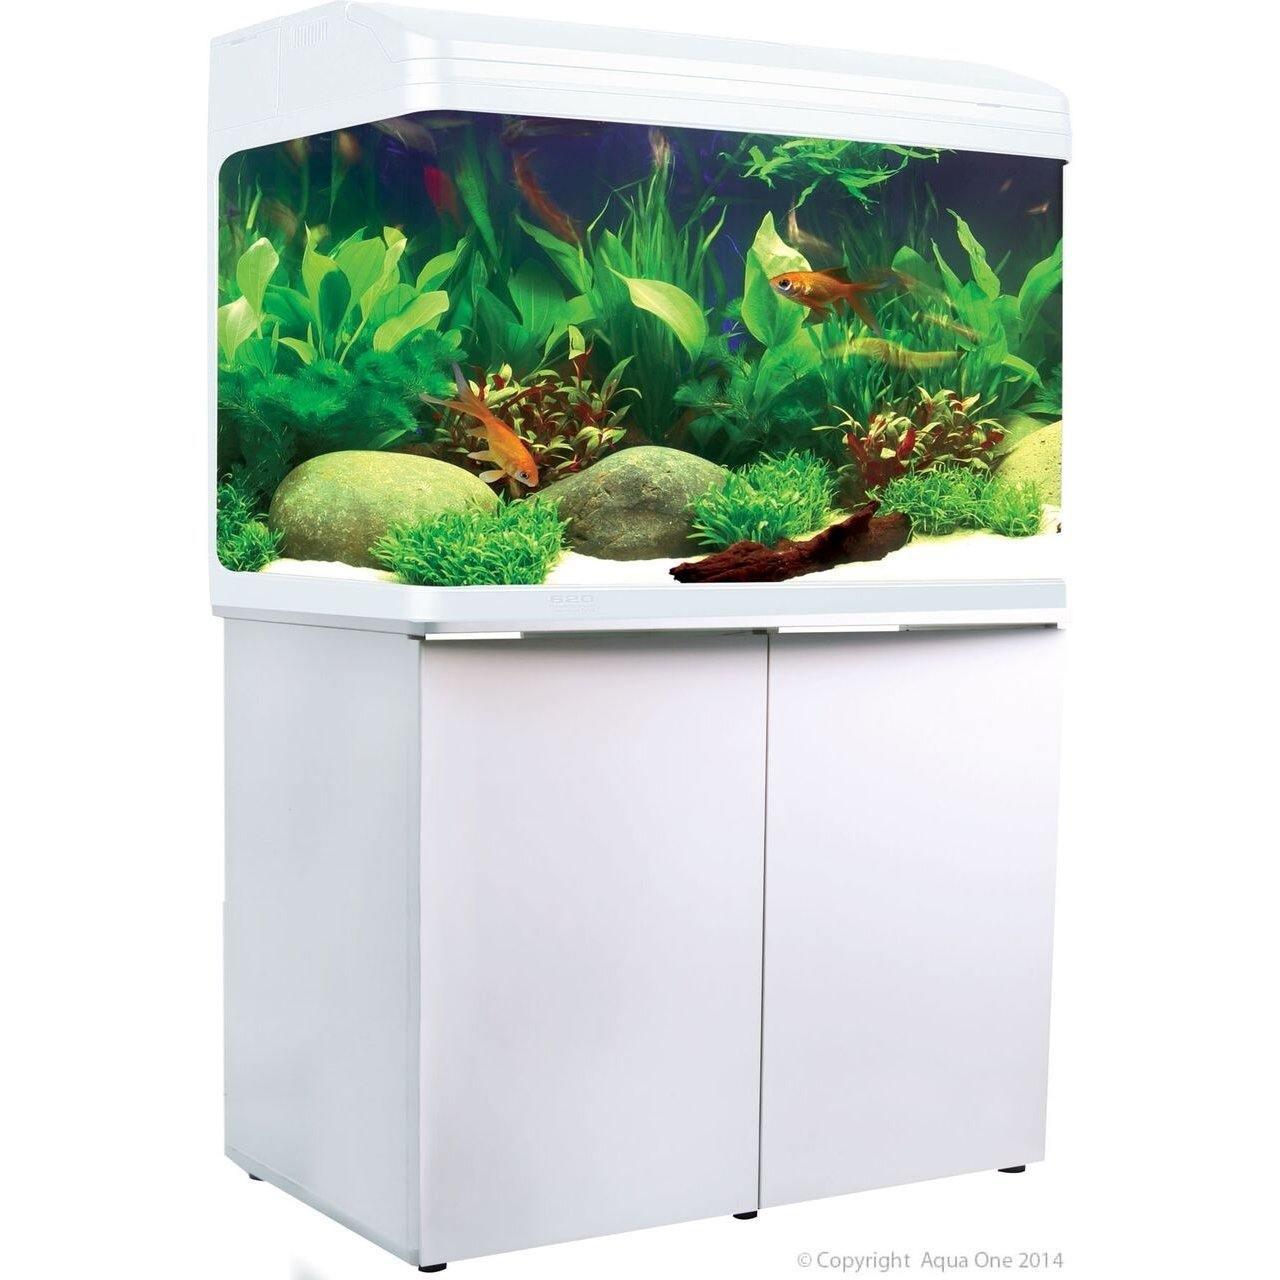 Aqua One AR 620 White Aquarium With Cabinet - Amazing Amazon